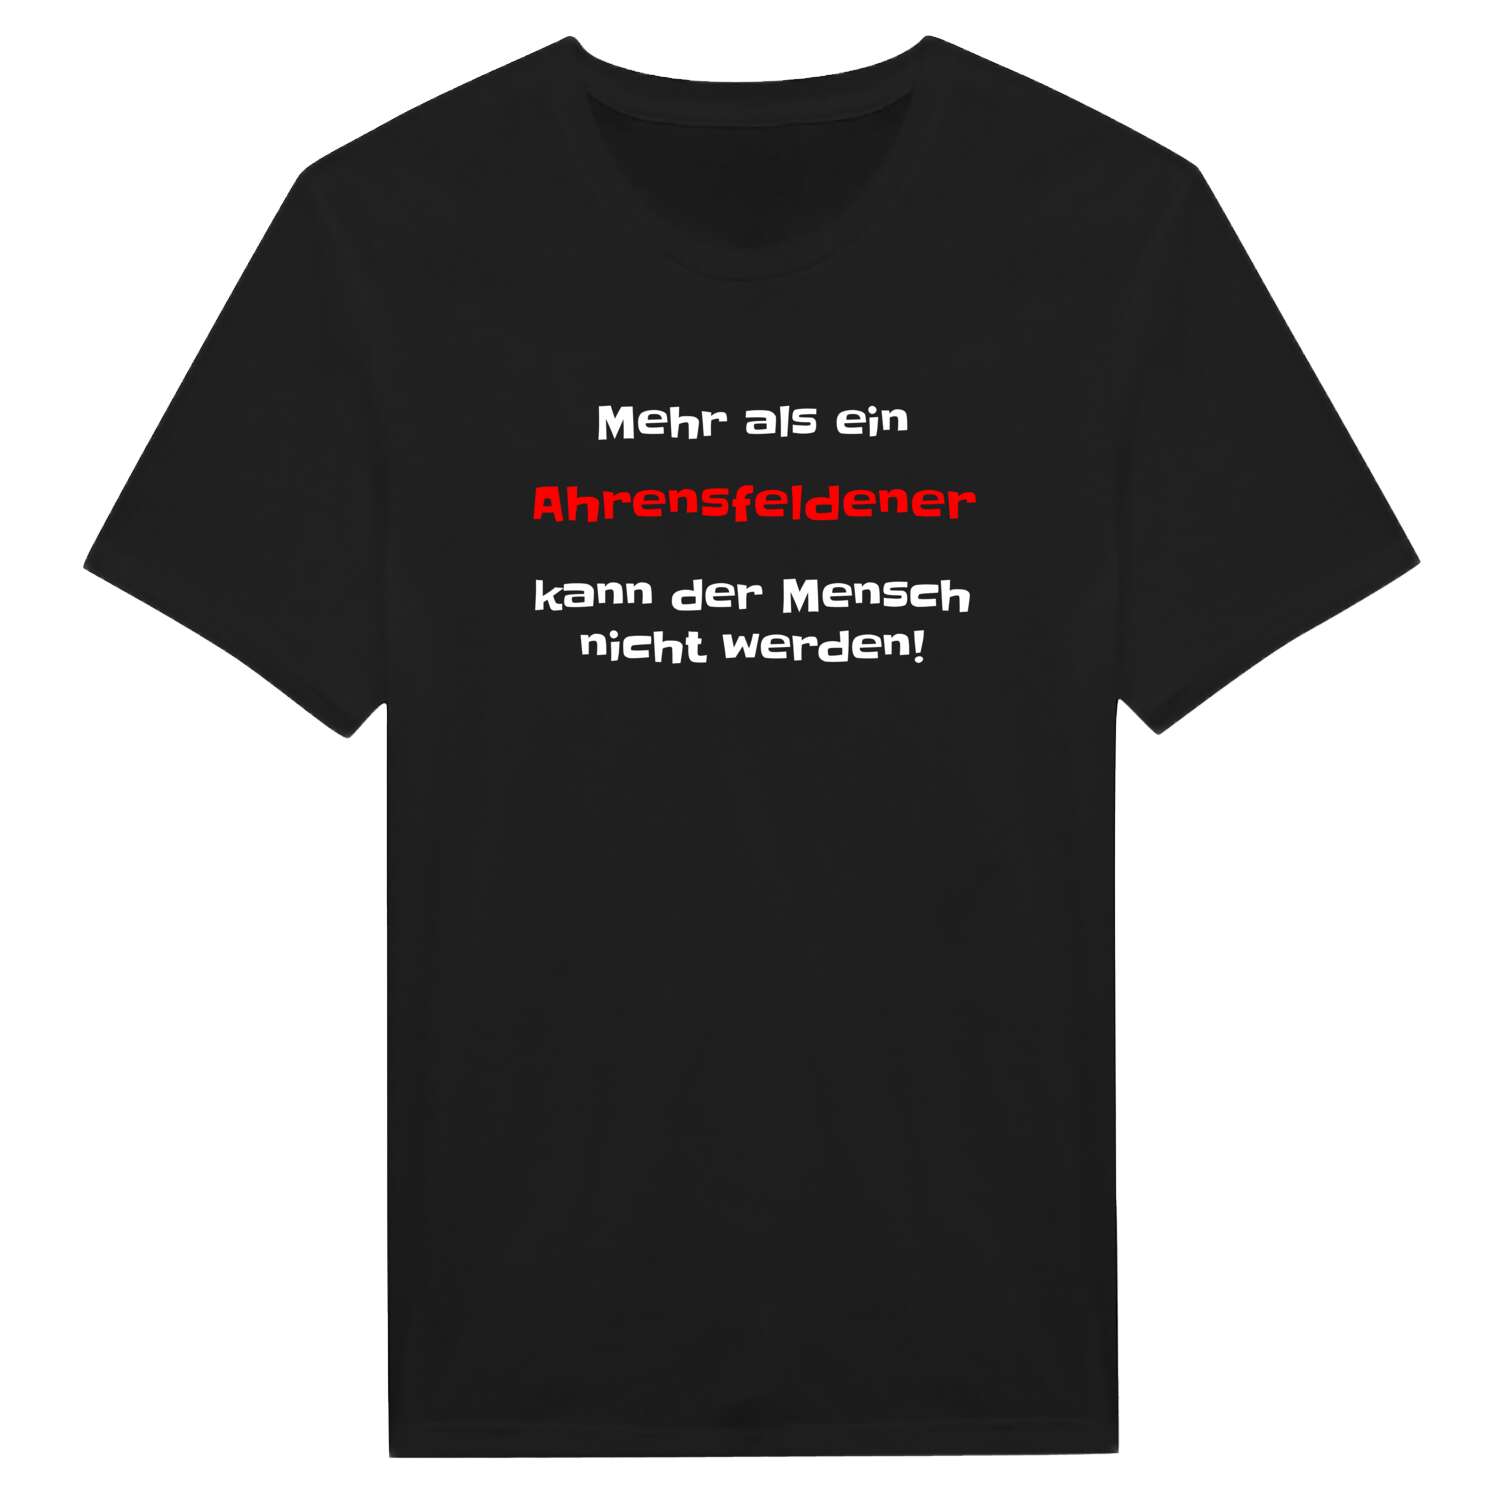 Ahrensfelde T-Shirt »Mehr als ein«